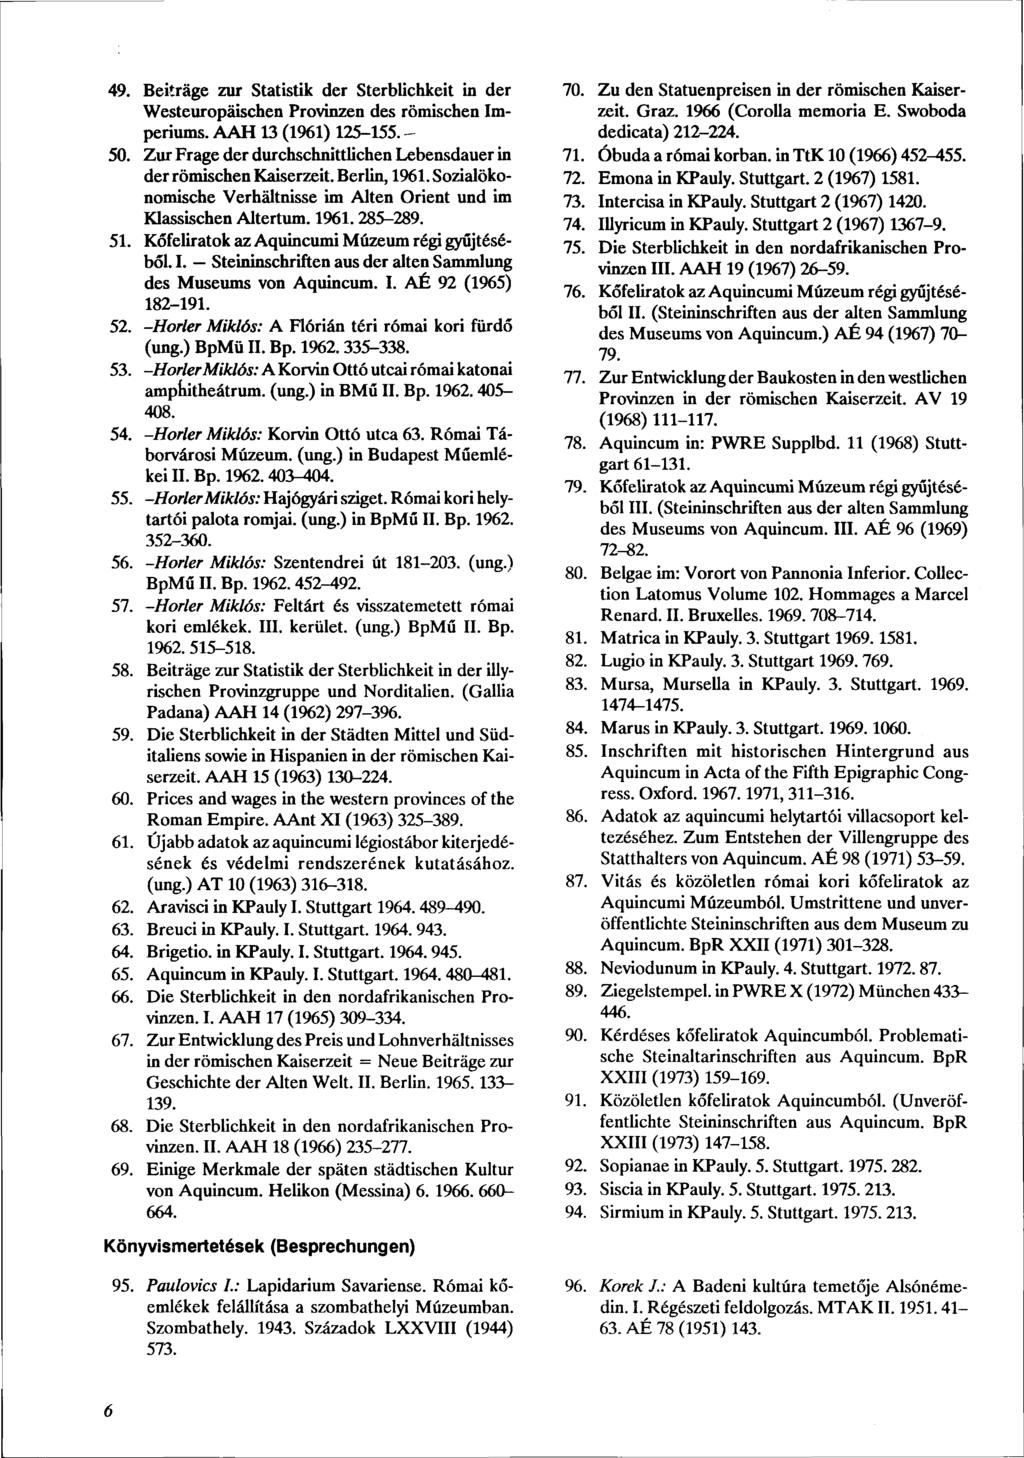 49. Beiträge zur Statistik der Sterblichkeit in der Westeuropäischen Provinzen des römischen Imperiums. AAH 13 (1961) 125-155. - 50.